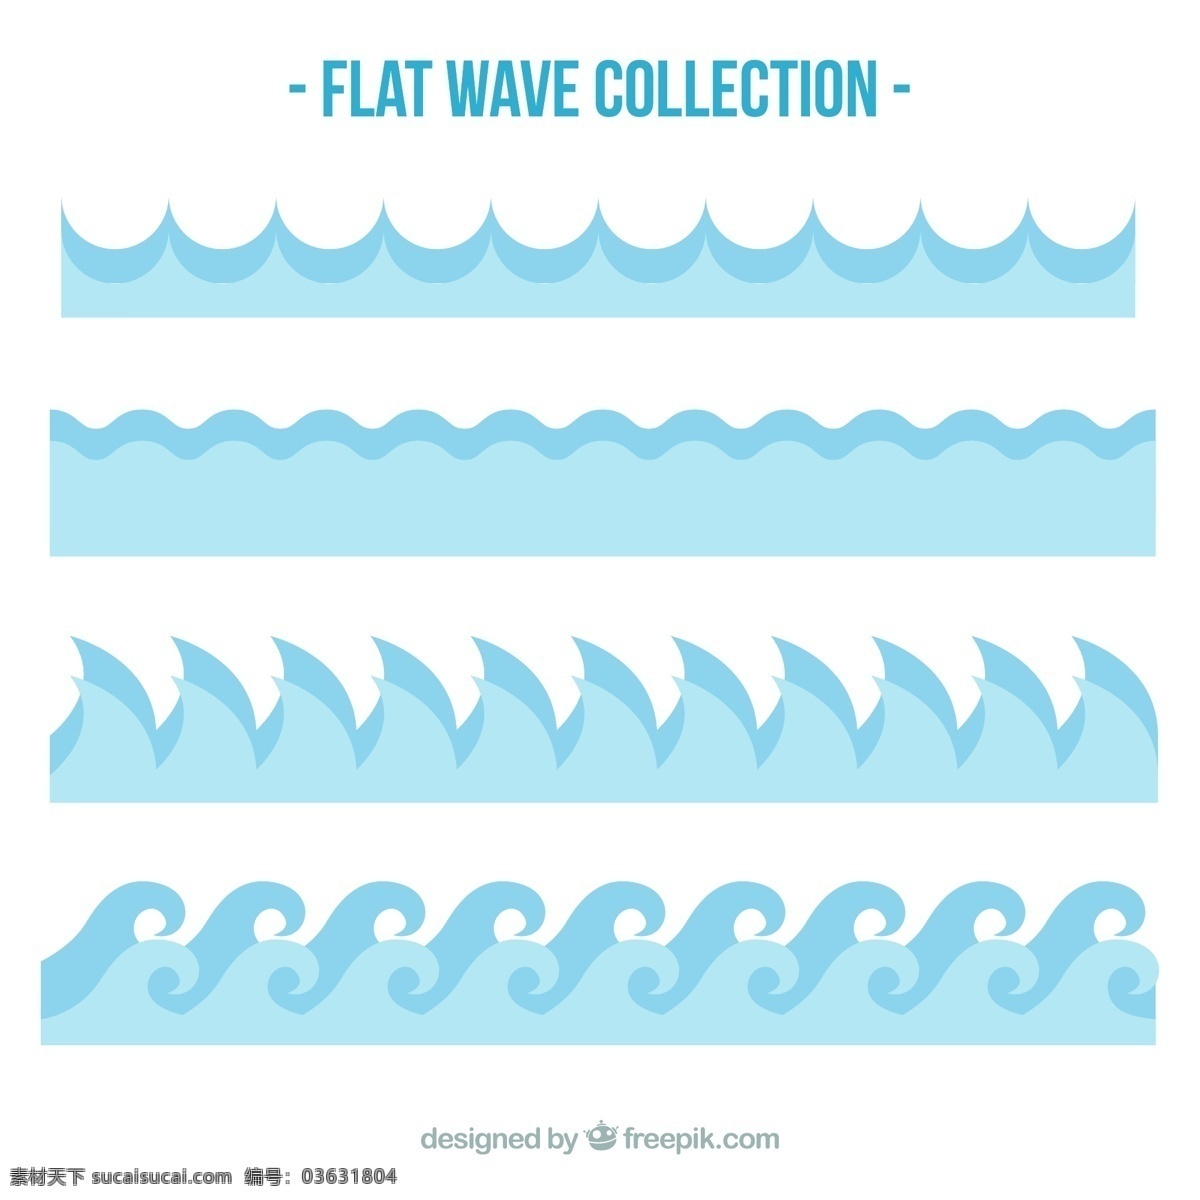 平面设计 中 蓝色 波浪 抽象的水 夏季 自然 海洋 色彩 平面 水色 抽象波浪 海浪 流体 电流 品种